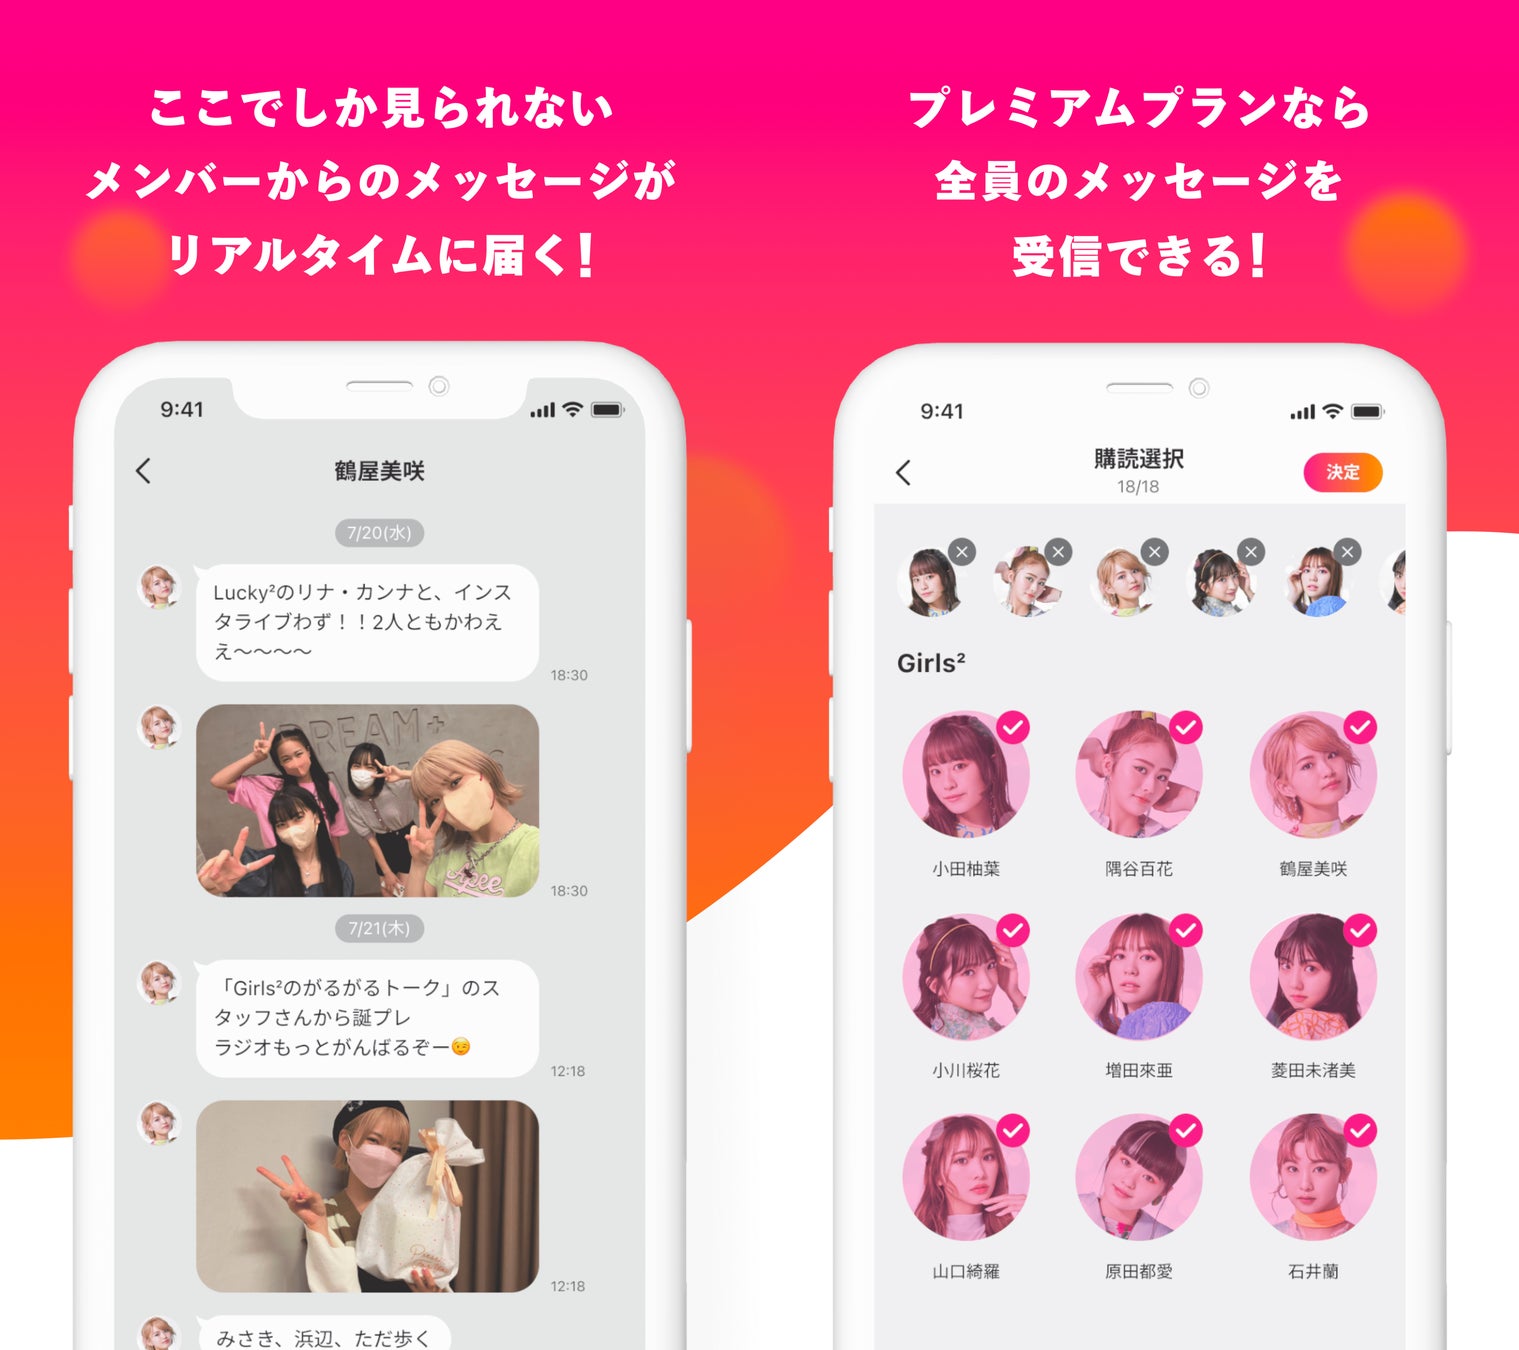 Girls²とLucky²のメンバーからメッセージが届くオフィシャルメッセージアプリ「GL² friend」が開始！のサブ画像2